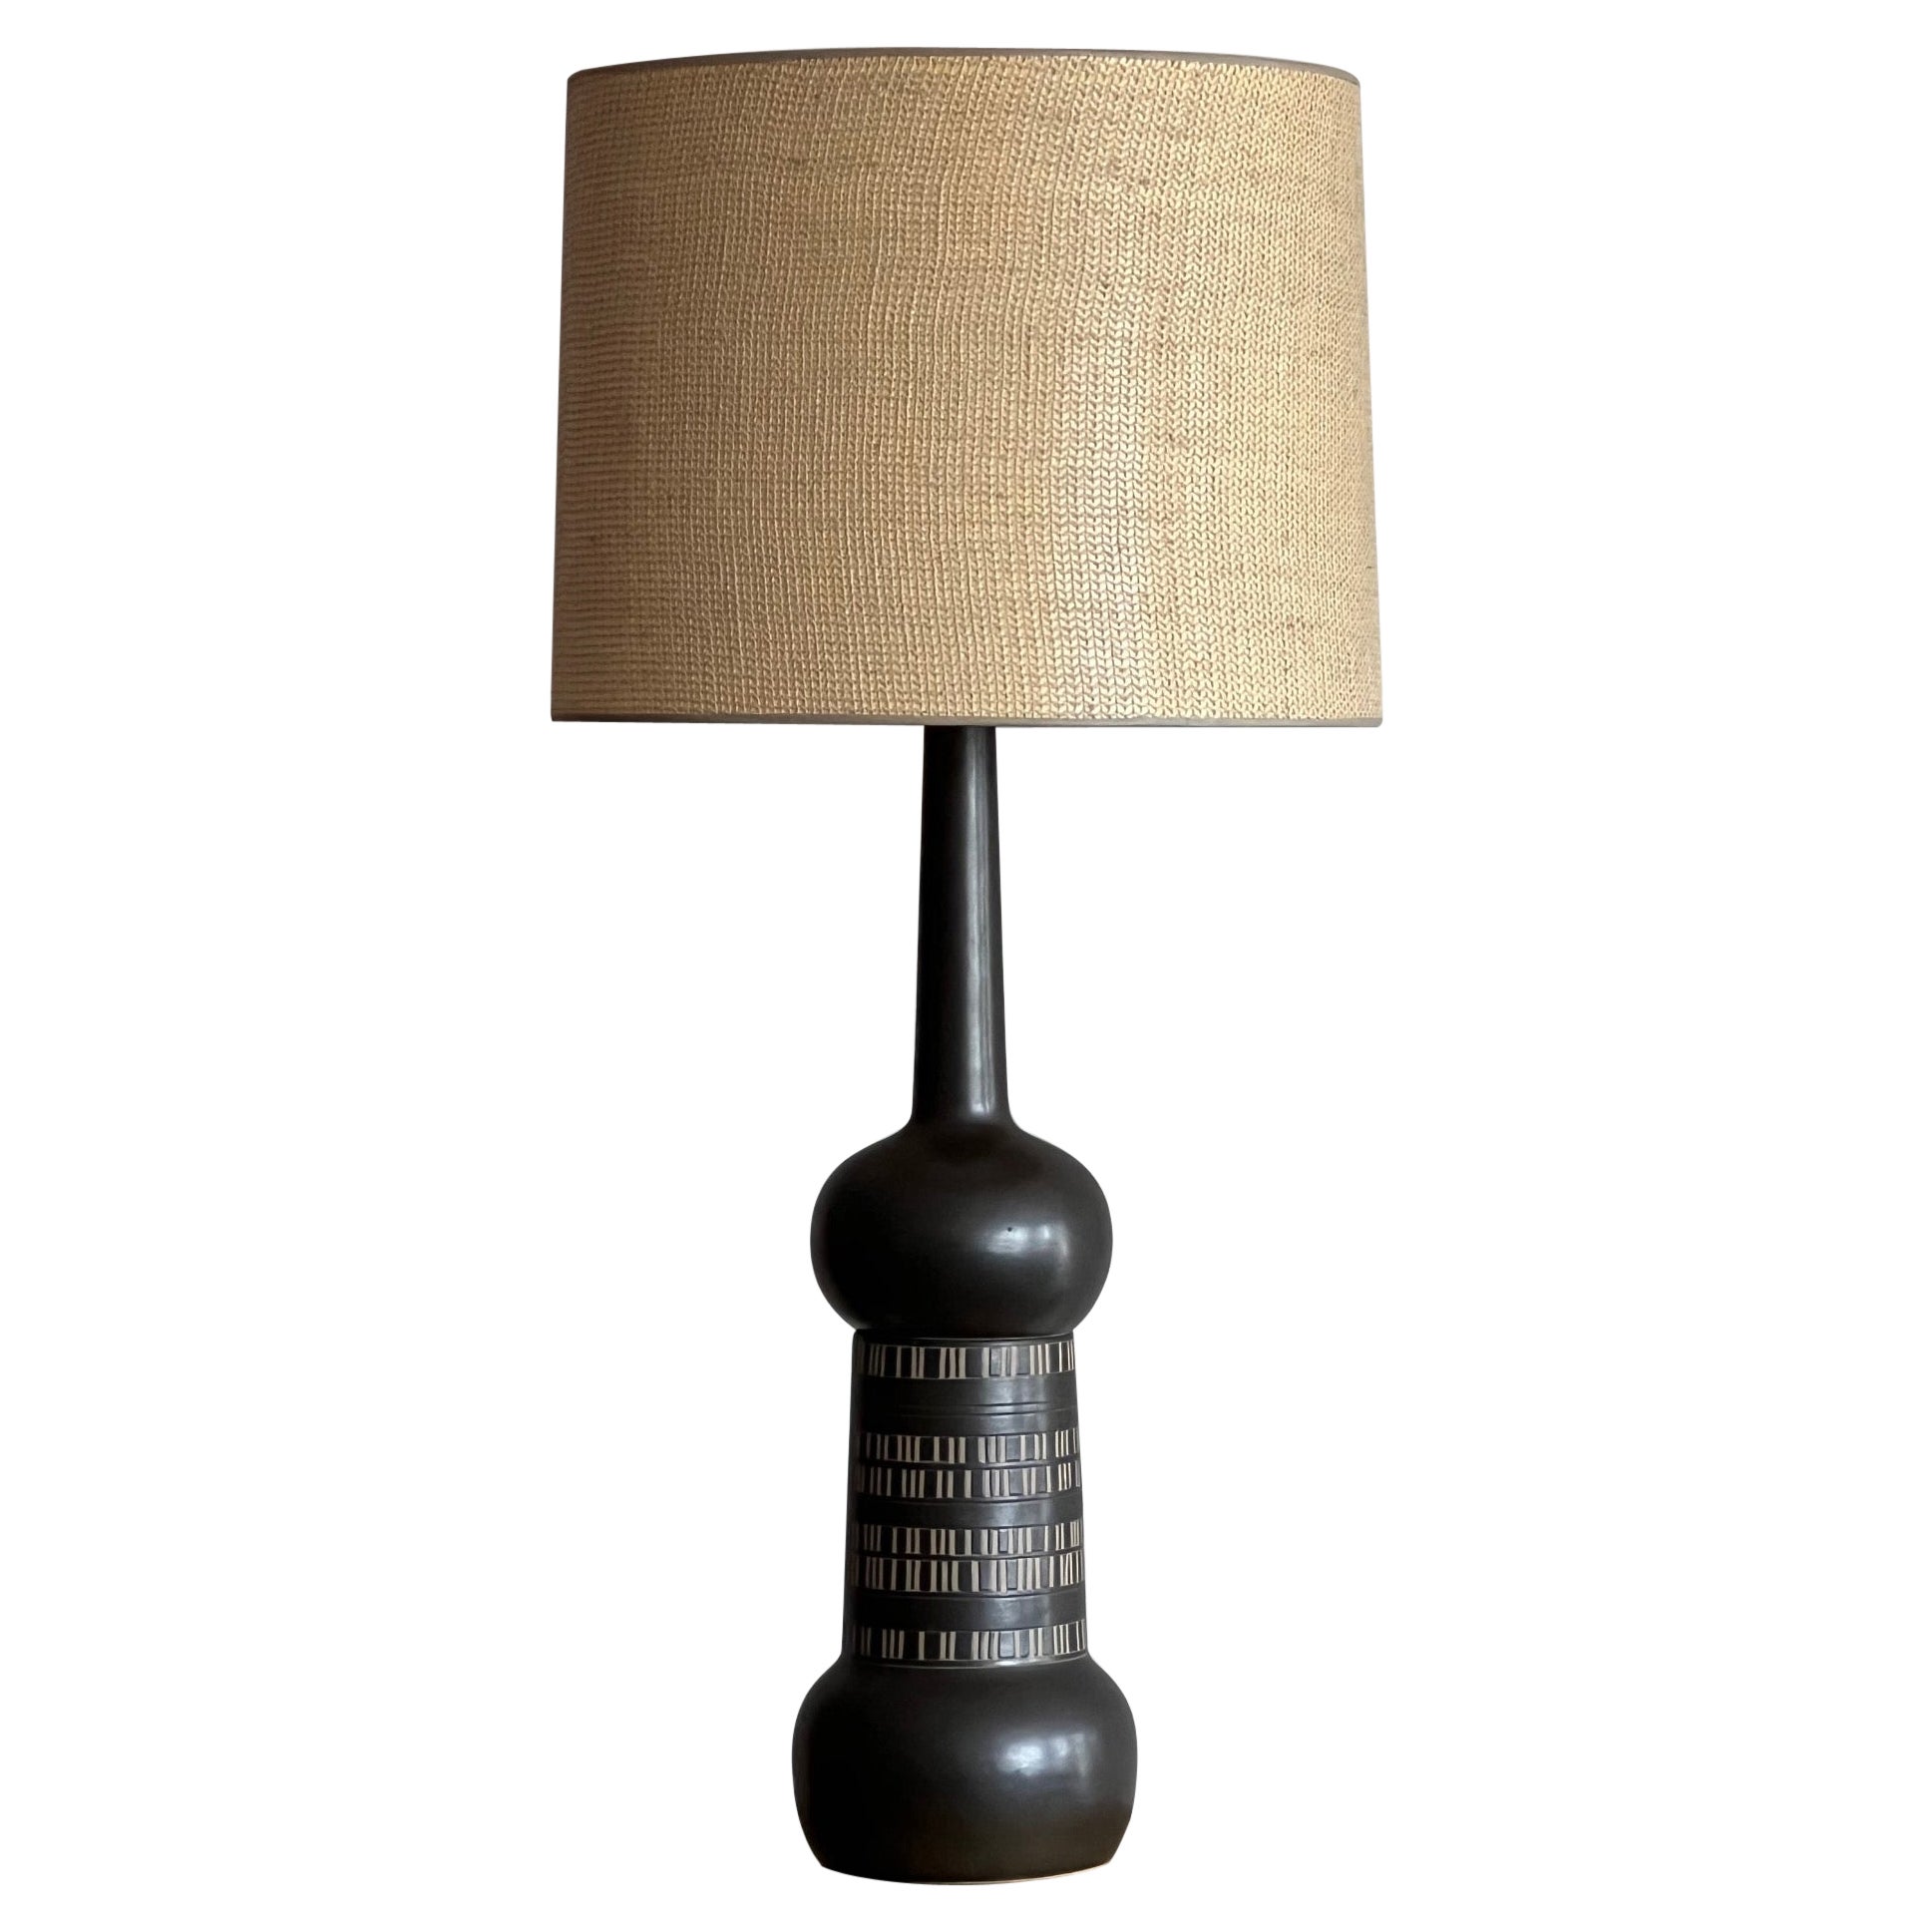 Unusual Martz Table Lamp